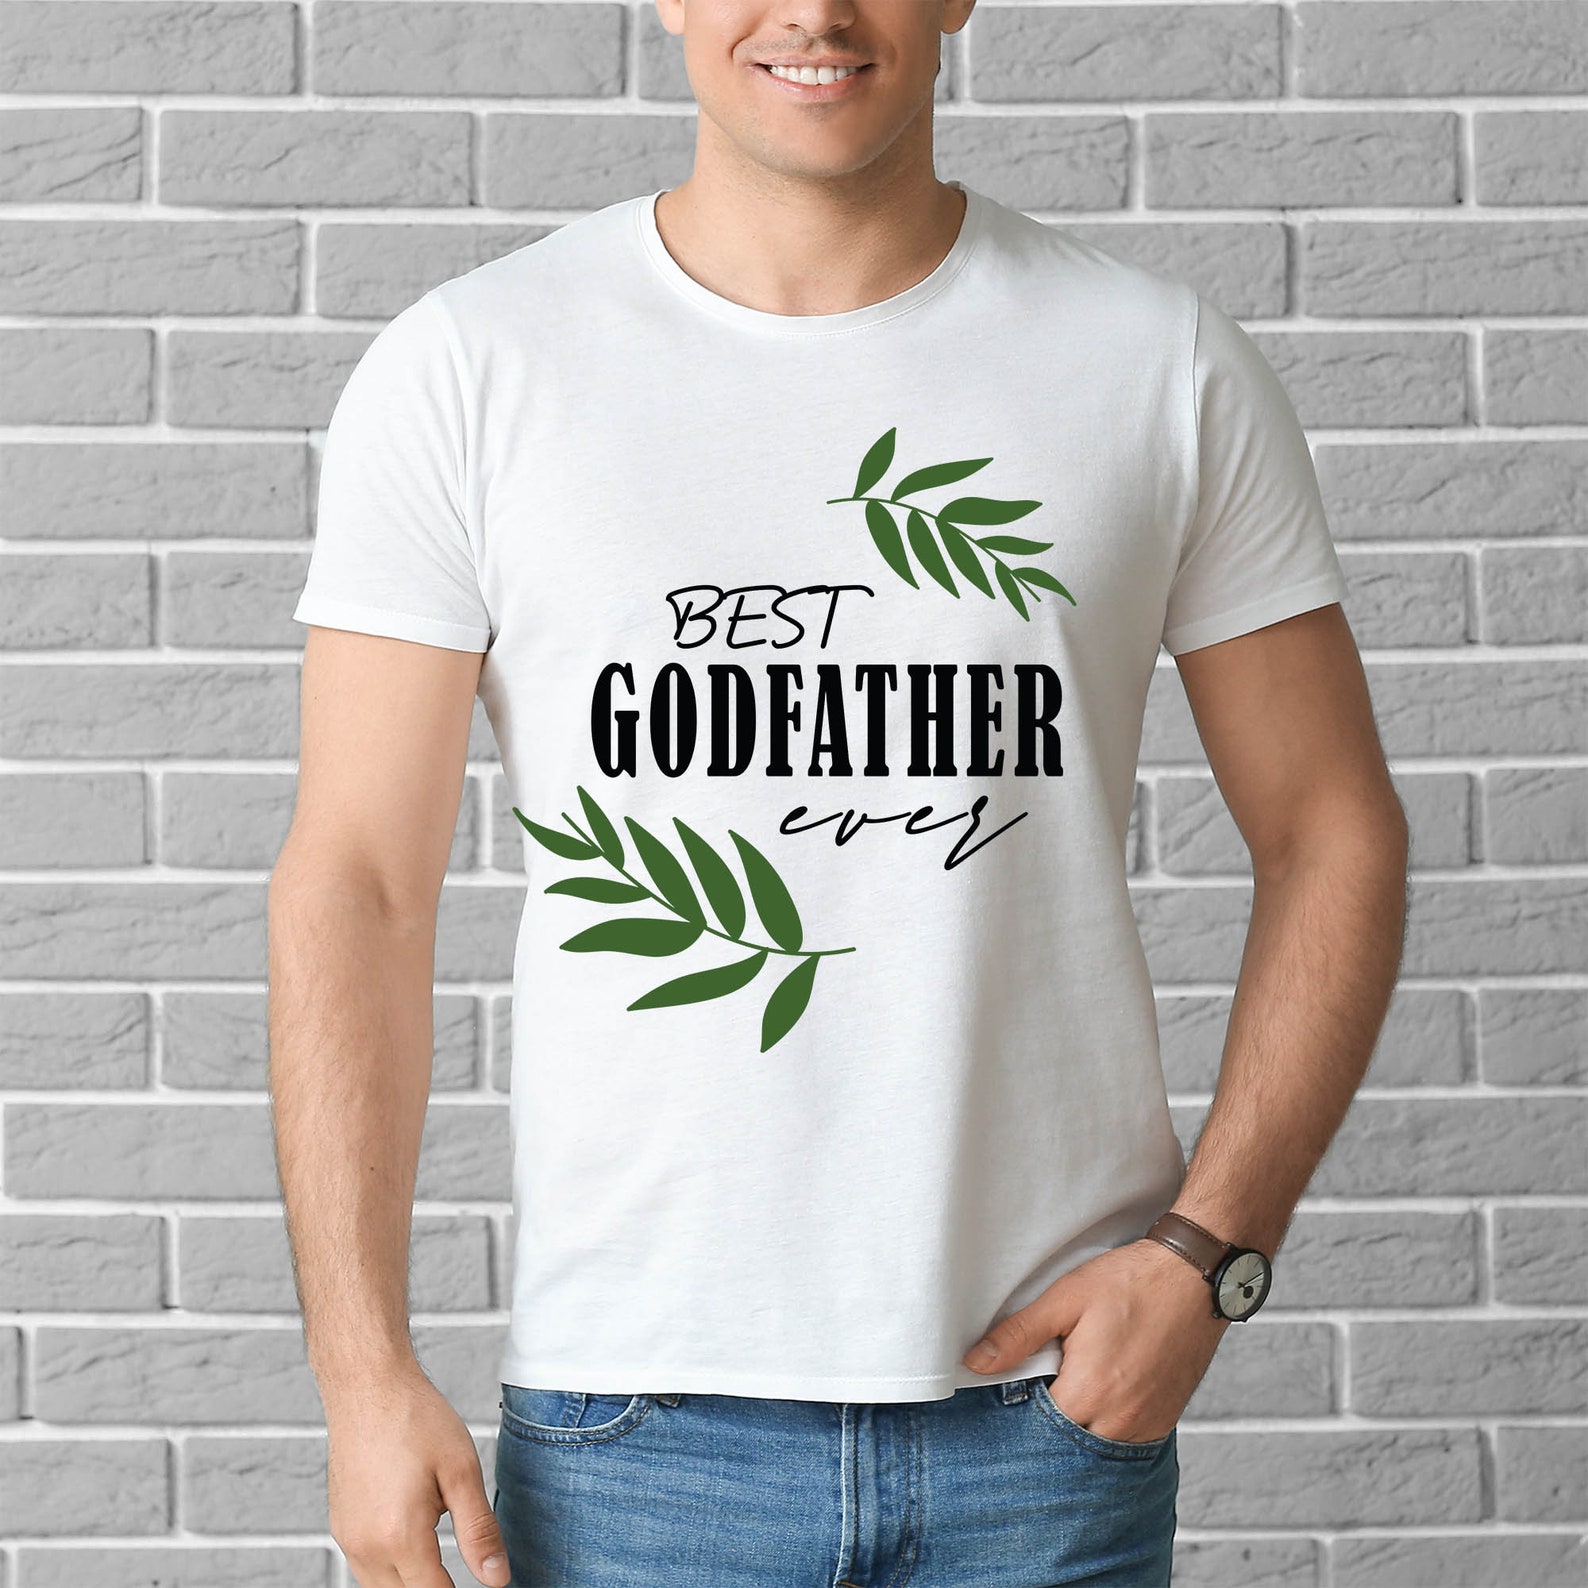 Download Best Godfather Ever SVG Godmfather gift SVG cut file for ...